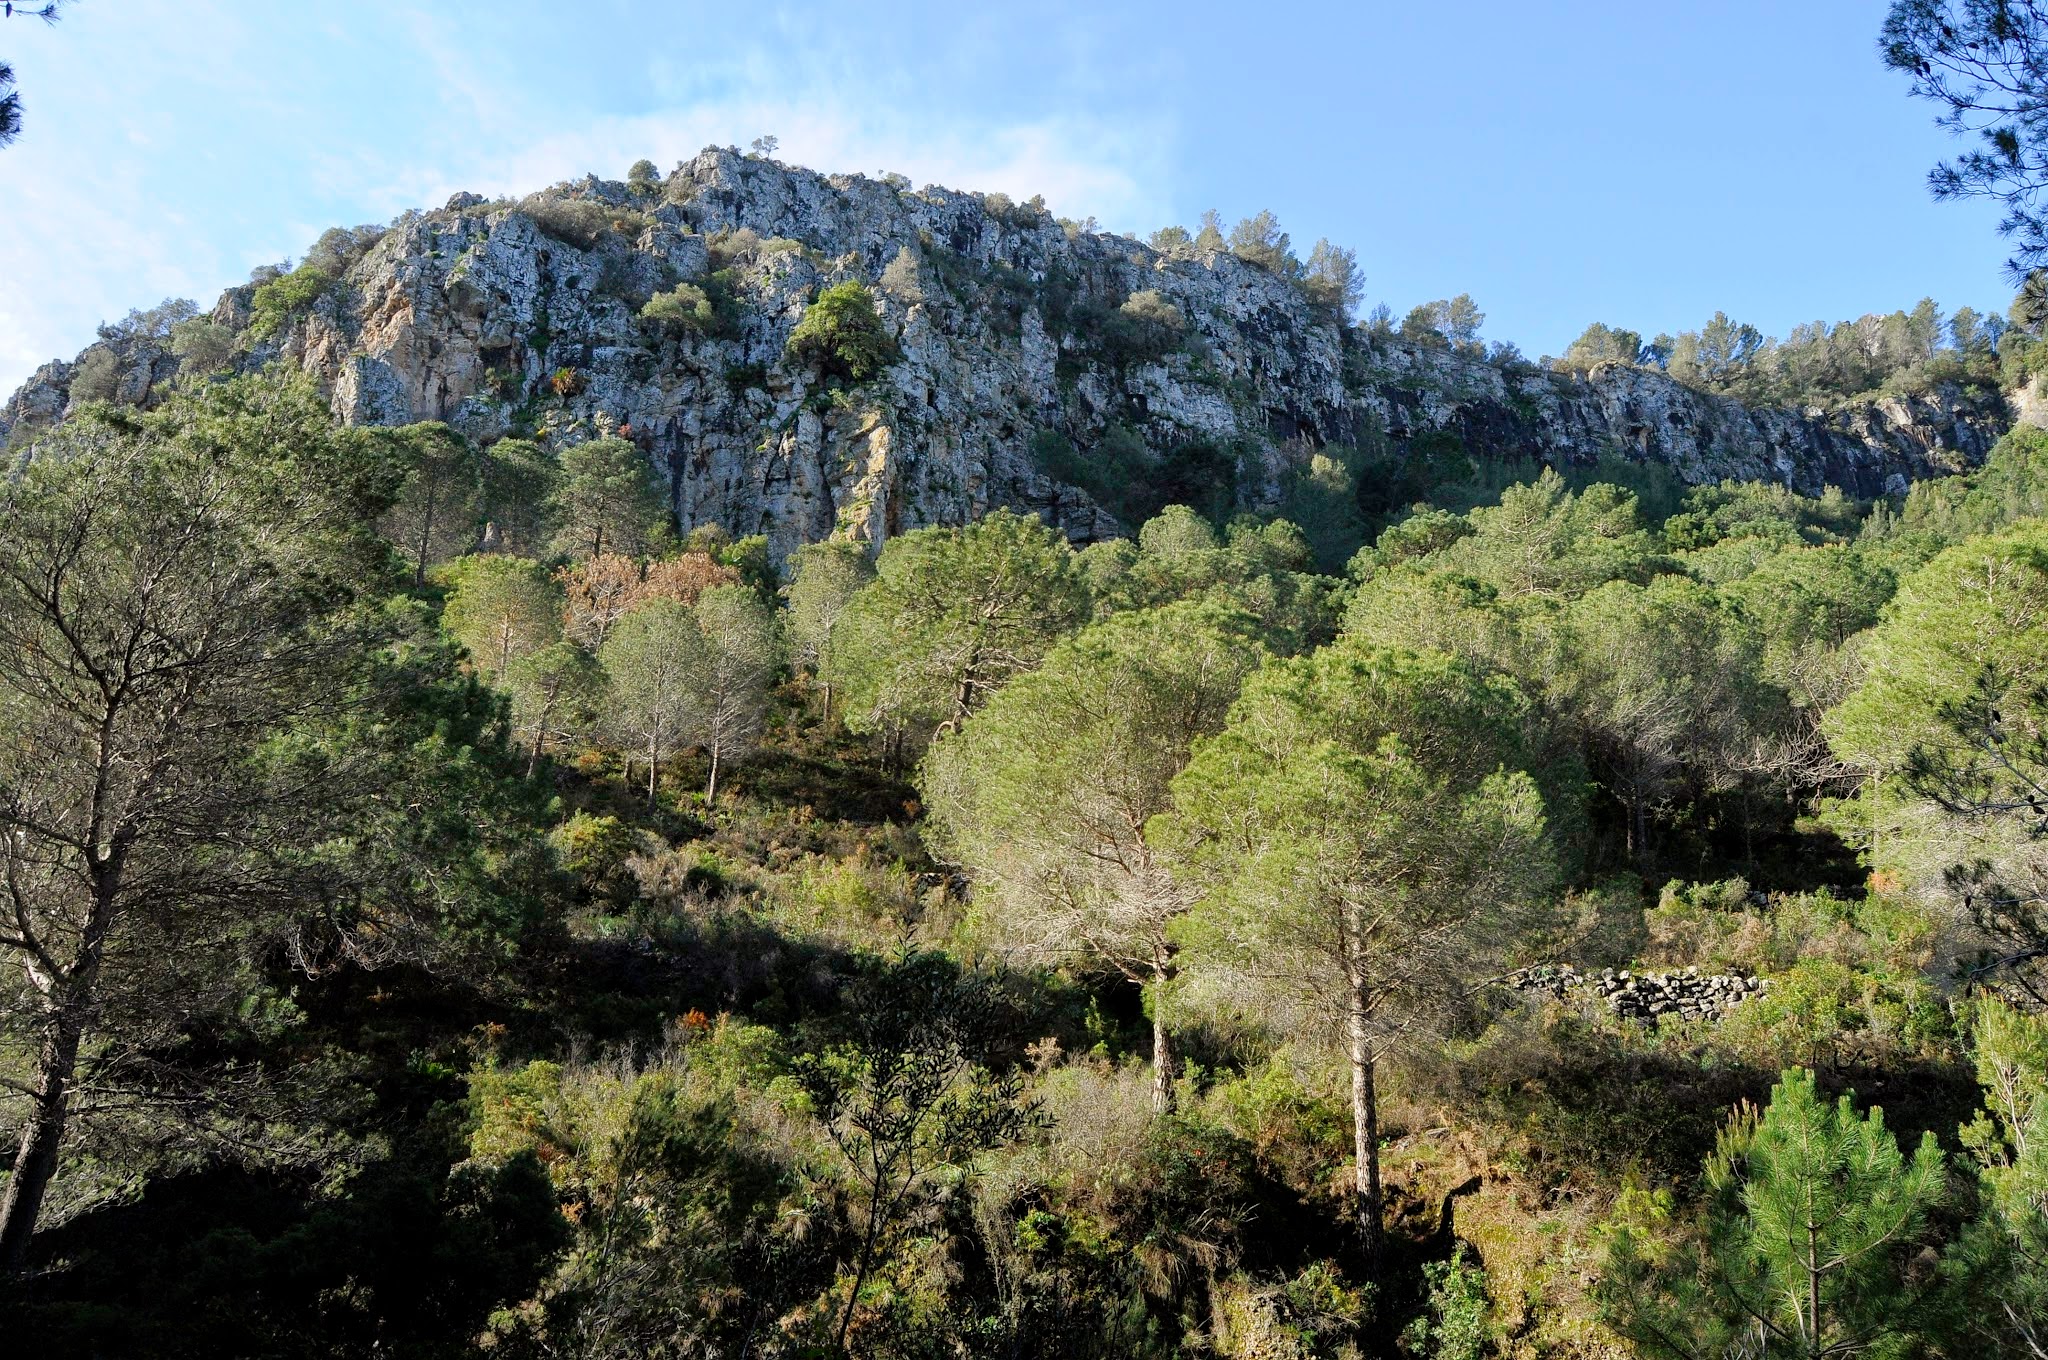 Ampliar imagen: Fotografía con un bosque en primer plano y al fondo una montaña rocosa de color gris, cielo azul